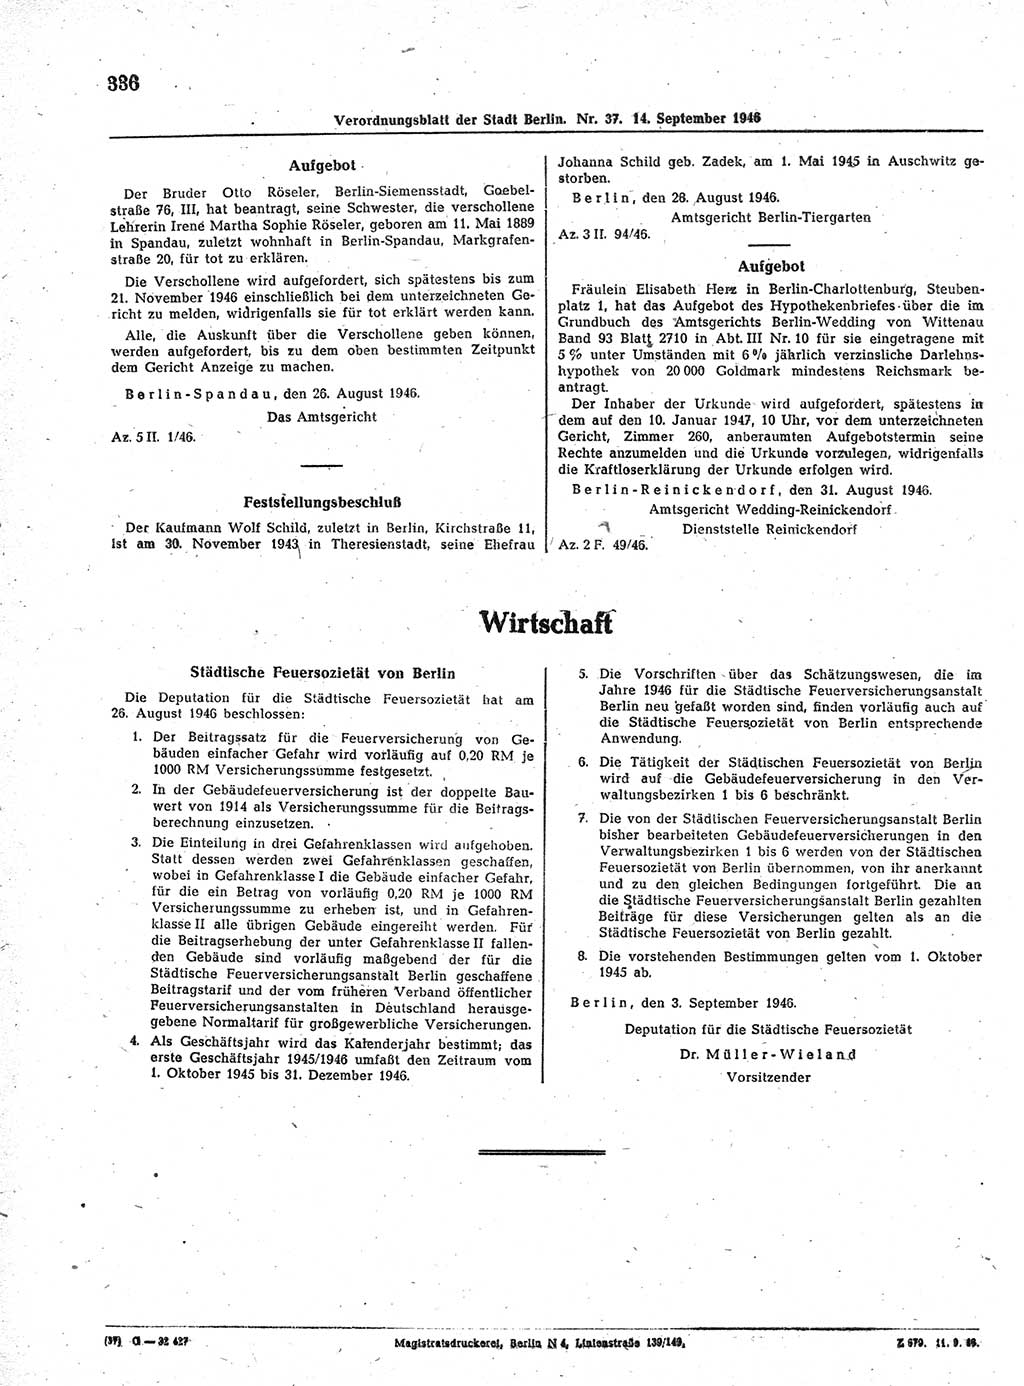 Verordnungsblatt (VOBl.) der Stadt Berlin, für Groß-Berlin 1946, Seite 336 (VOBl. Bln. 1946, S. 336)